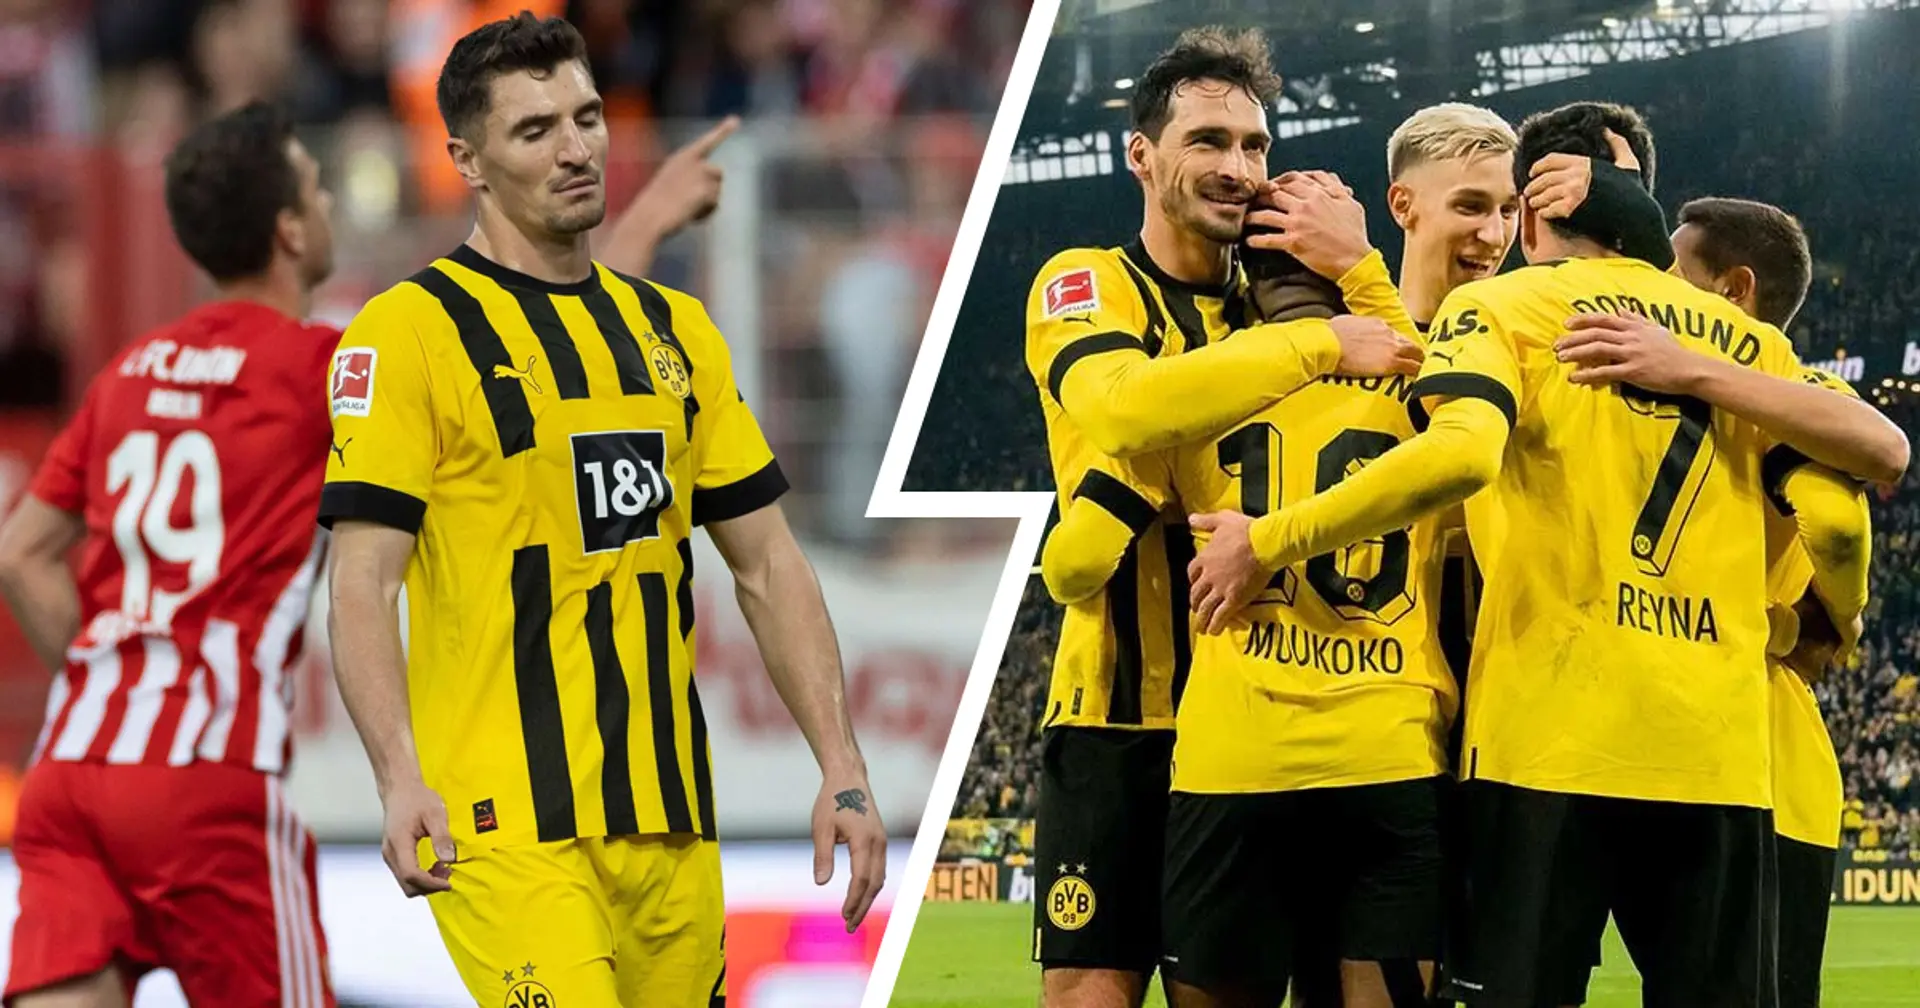 Ungeschlagen seit 6 Spielen: Dortmunds Reaktion auf die Niederlage vs. Union ist wirklich bemerkenswert